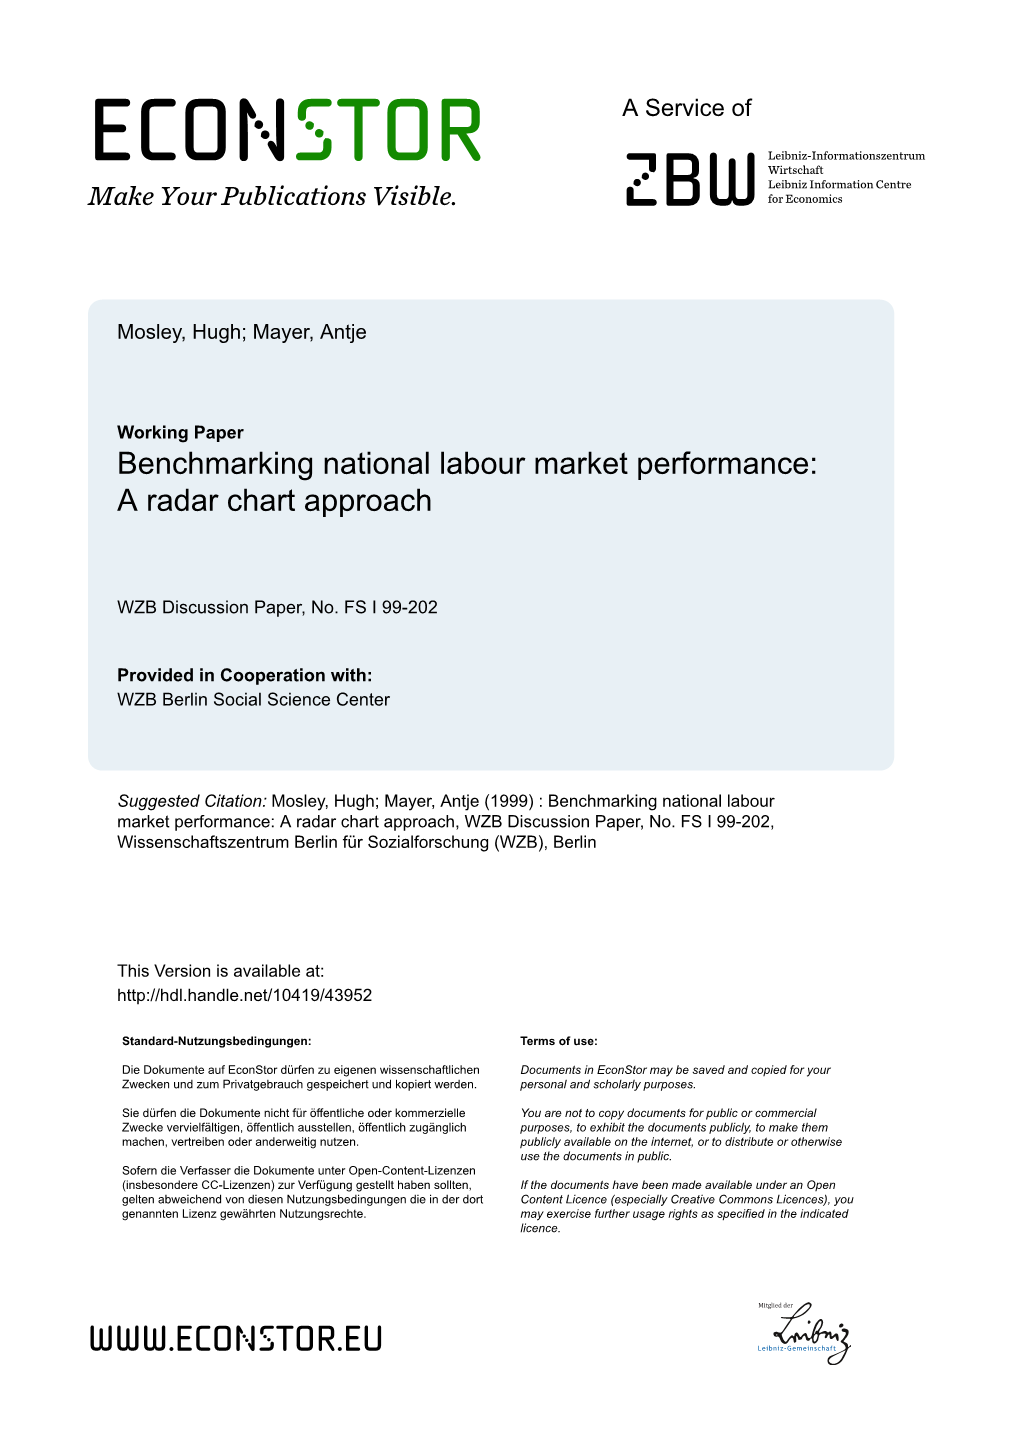 Benchmarking National Labour Market Performance. a Radar Chart Approach